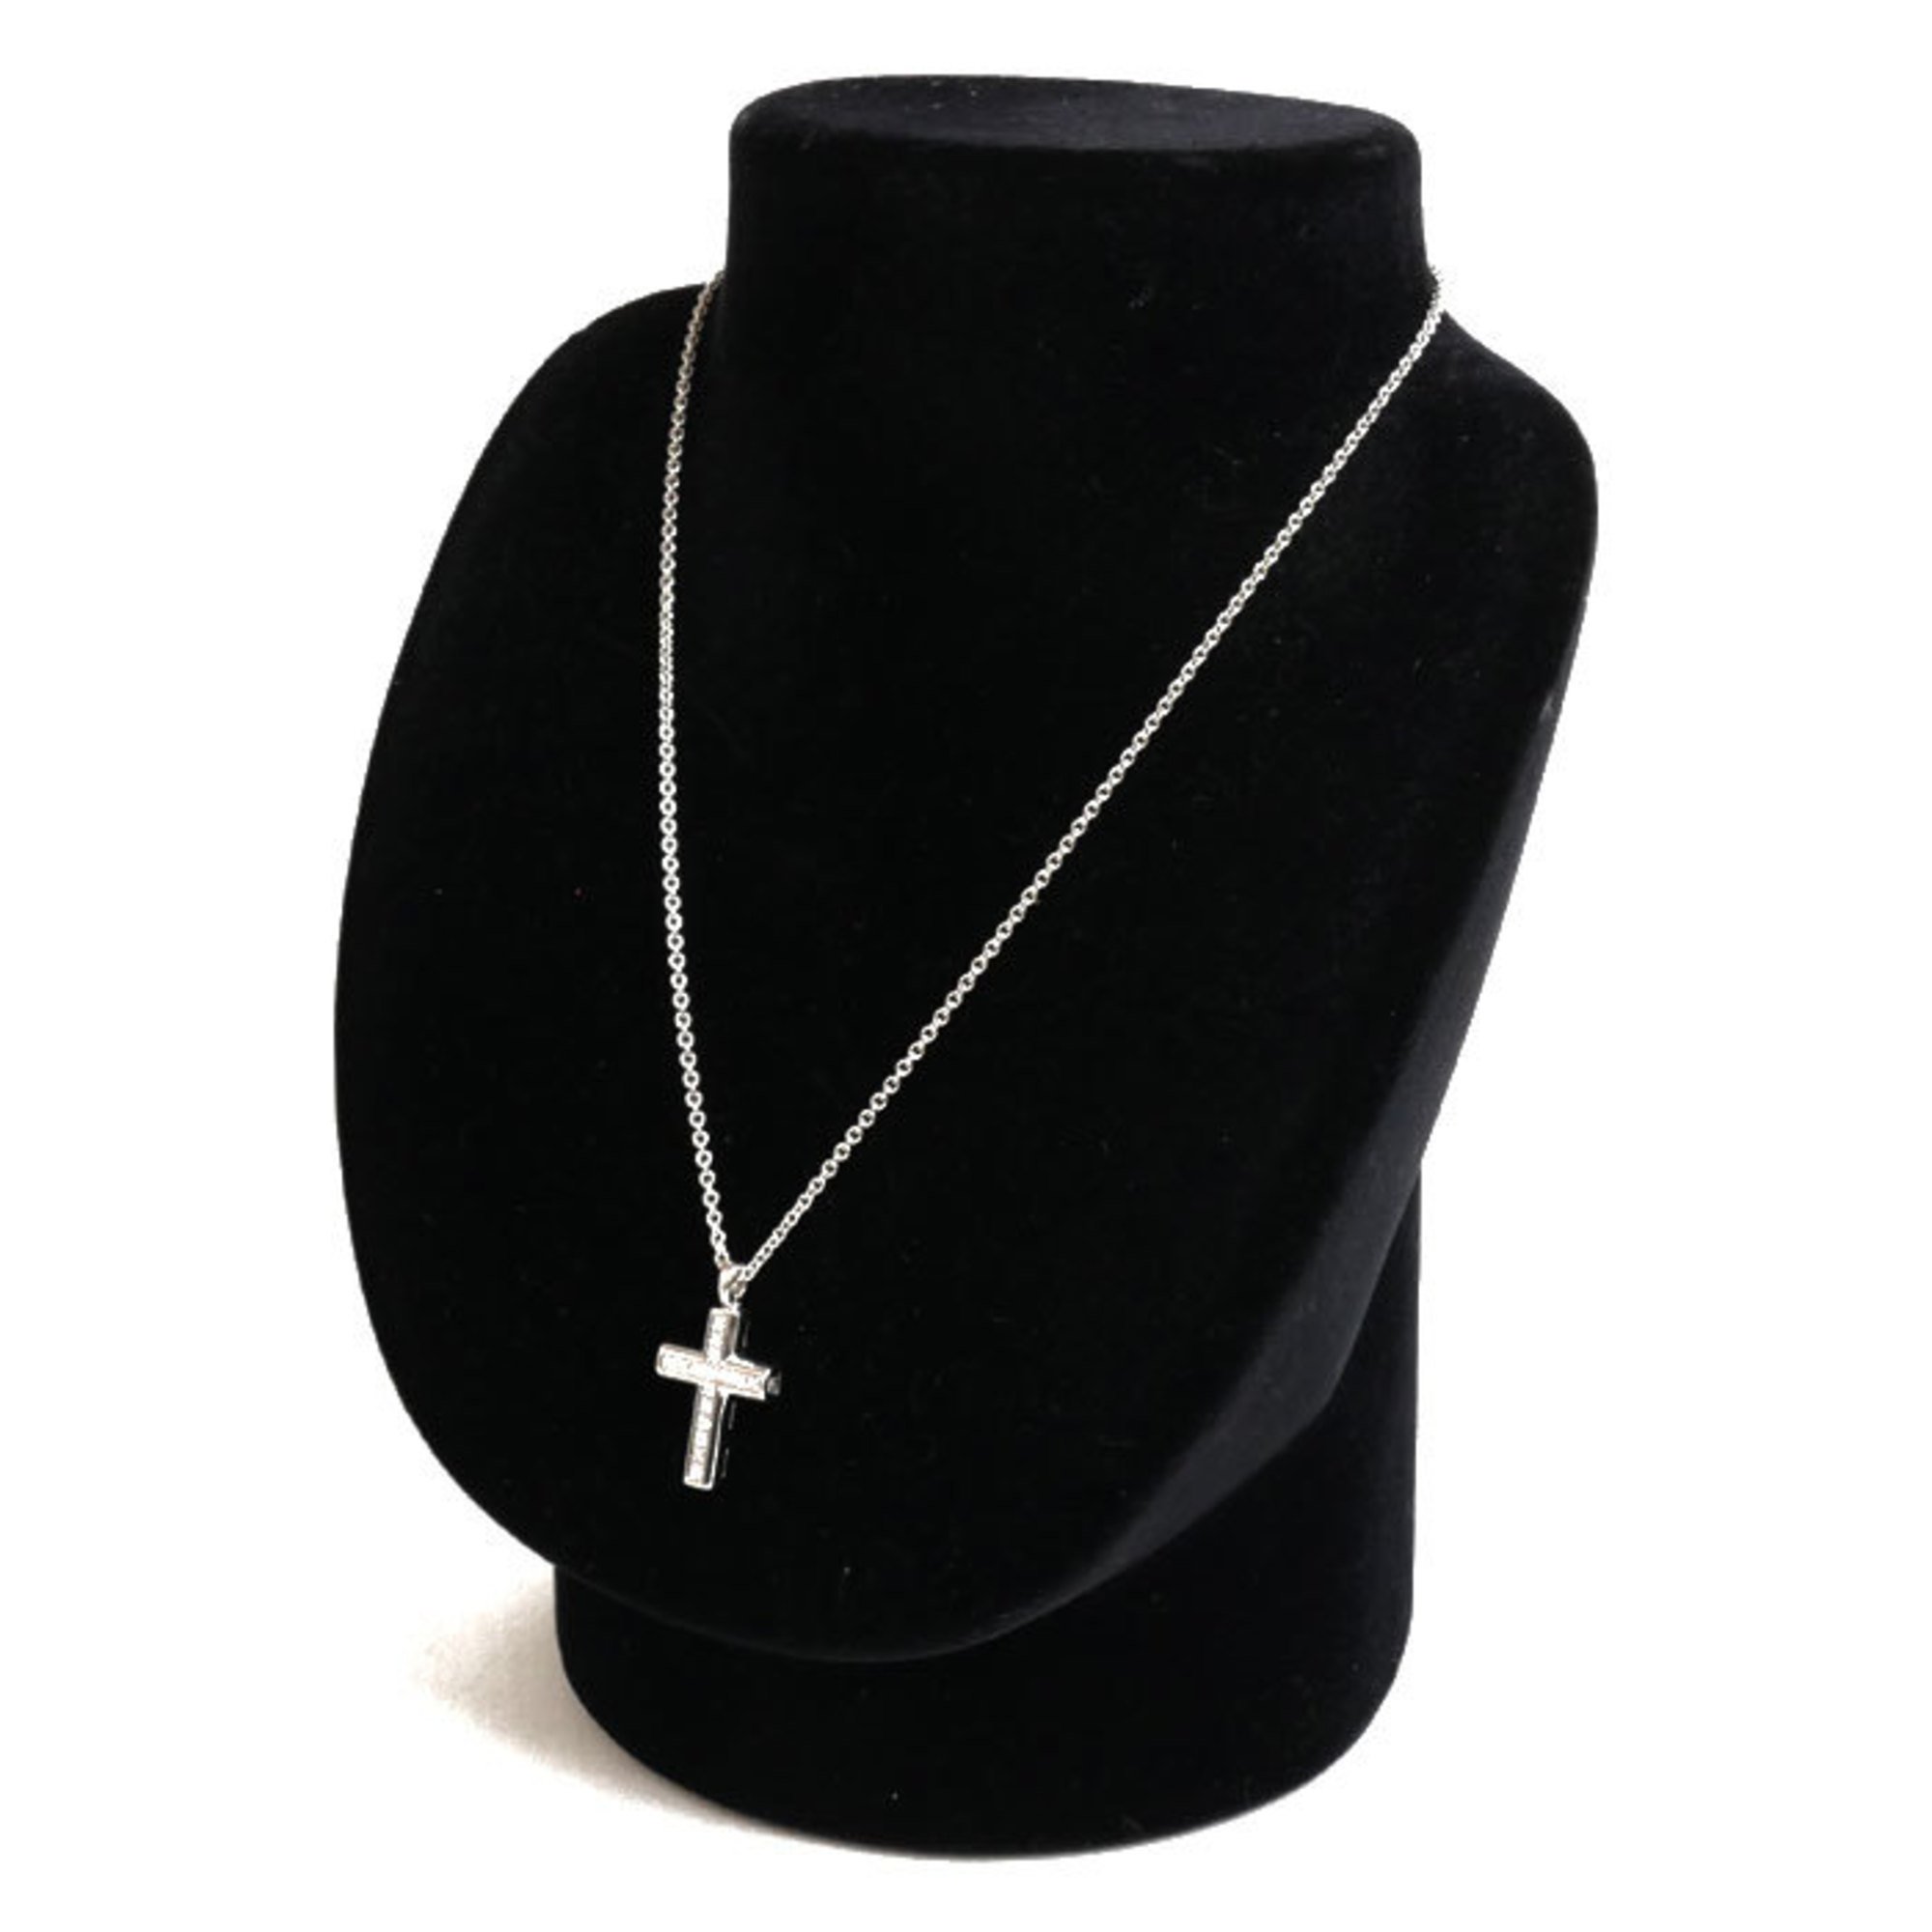 BVLGARI Bvlgari K18WG White Gold Latin Cross Necklace Diamond 9.5g 40cm Women's